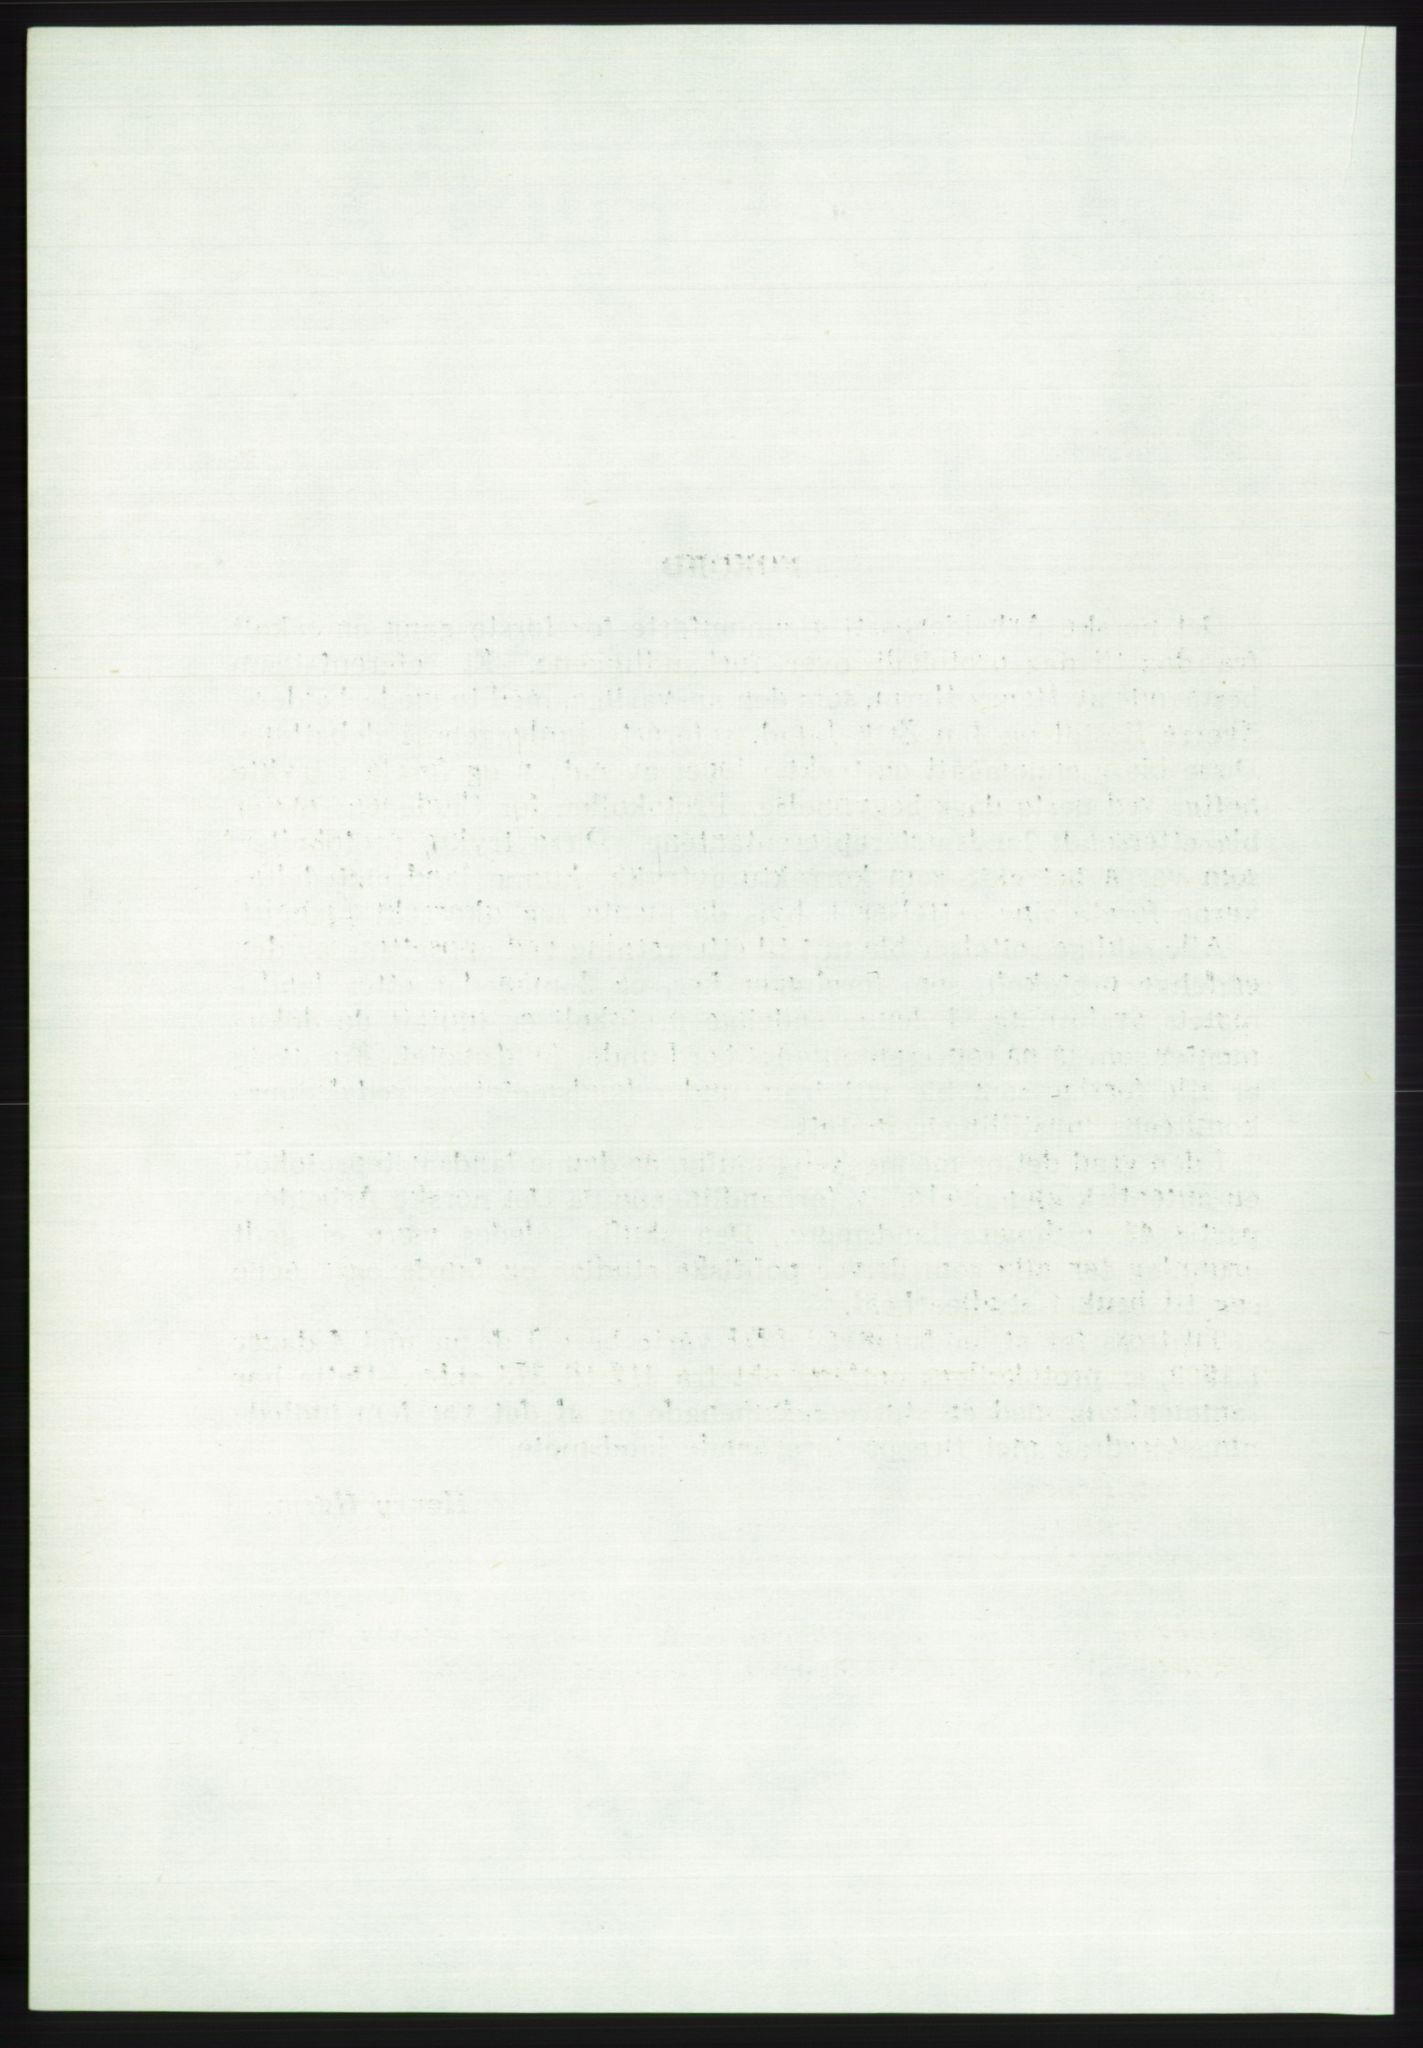 Det norske Arbeiderparti - publikasjoner, AAB/-/-/-: Protokoll over forhandlingene på det 43. ordinære landsmøte 9.-11. mai 1971 i Oslo, 1971, p. 8